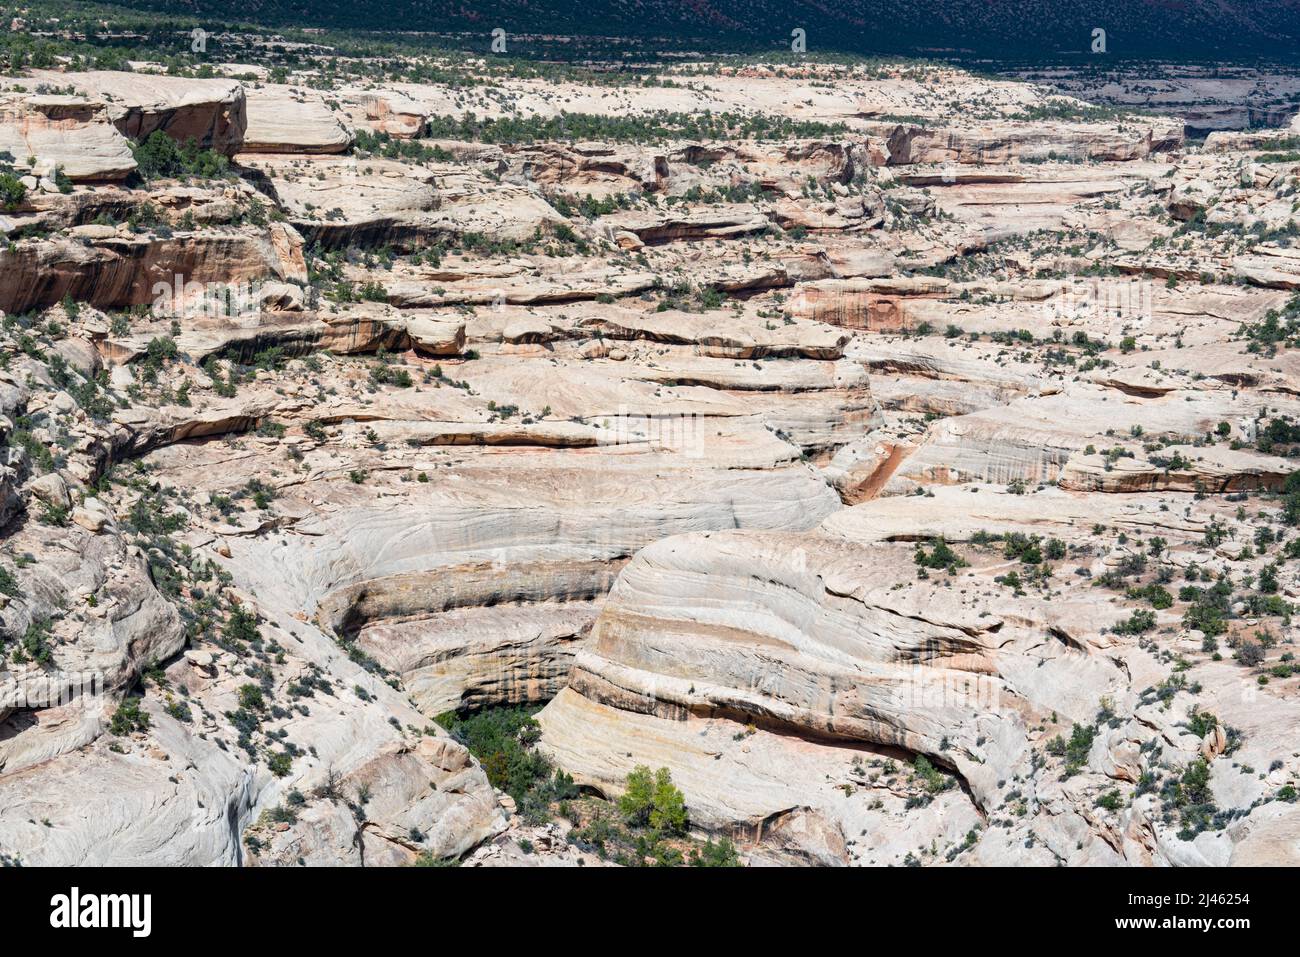 Magnifique canyon en grès érodé dans le monument national de Natural Bridges dans l'Utah Banque D'Images